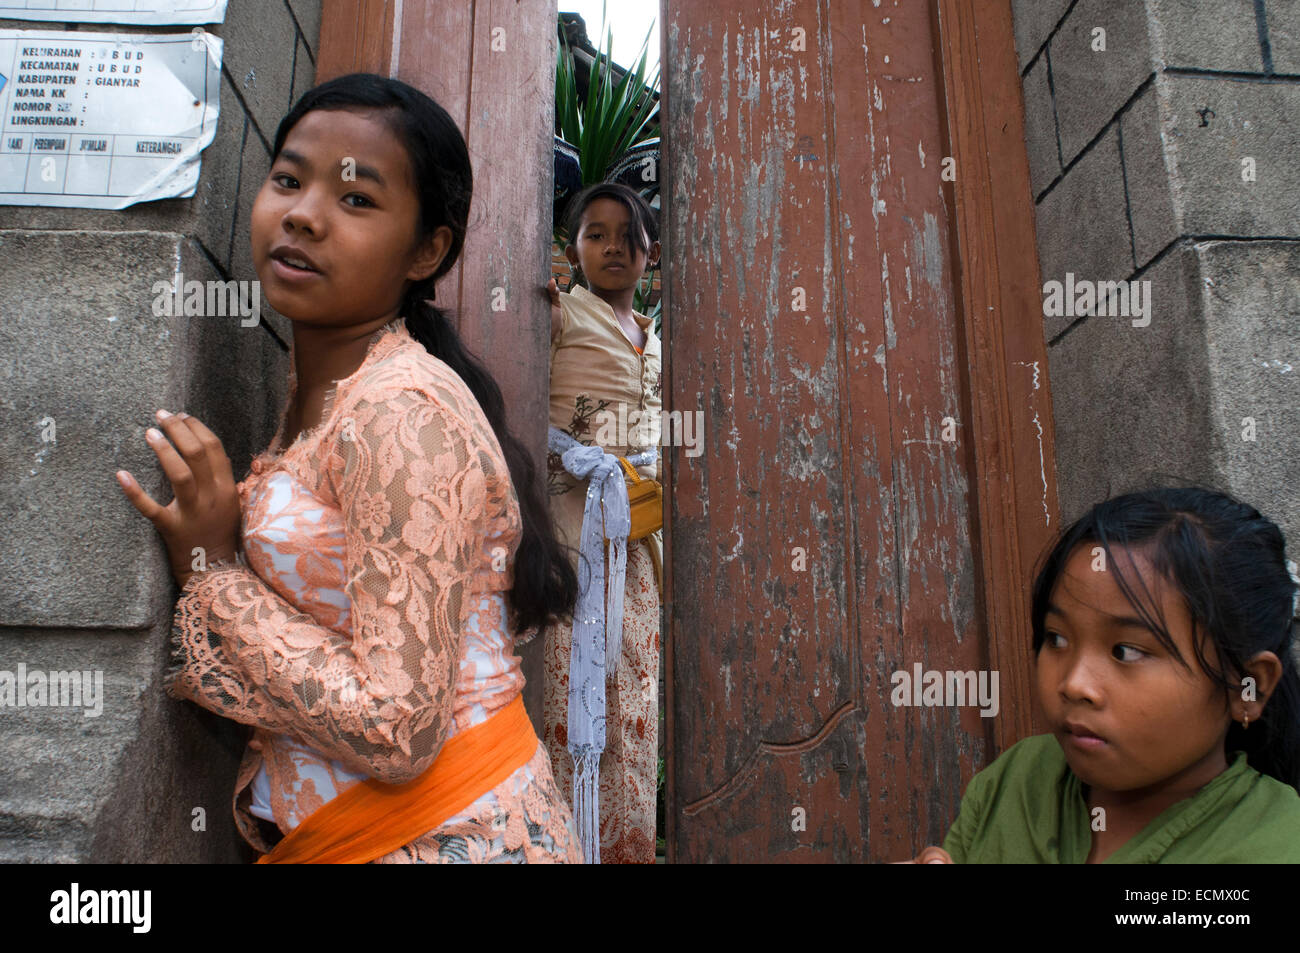 Mädchen vor ihrer Haustür in Ubid. Bali. Indonesien. Ubud ist eine Stadt auf der indonesischen Insel Bali in Ubud Bezirk, befindet sich amo Stockfoto